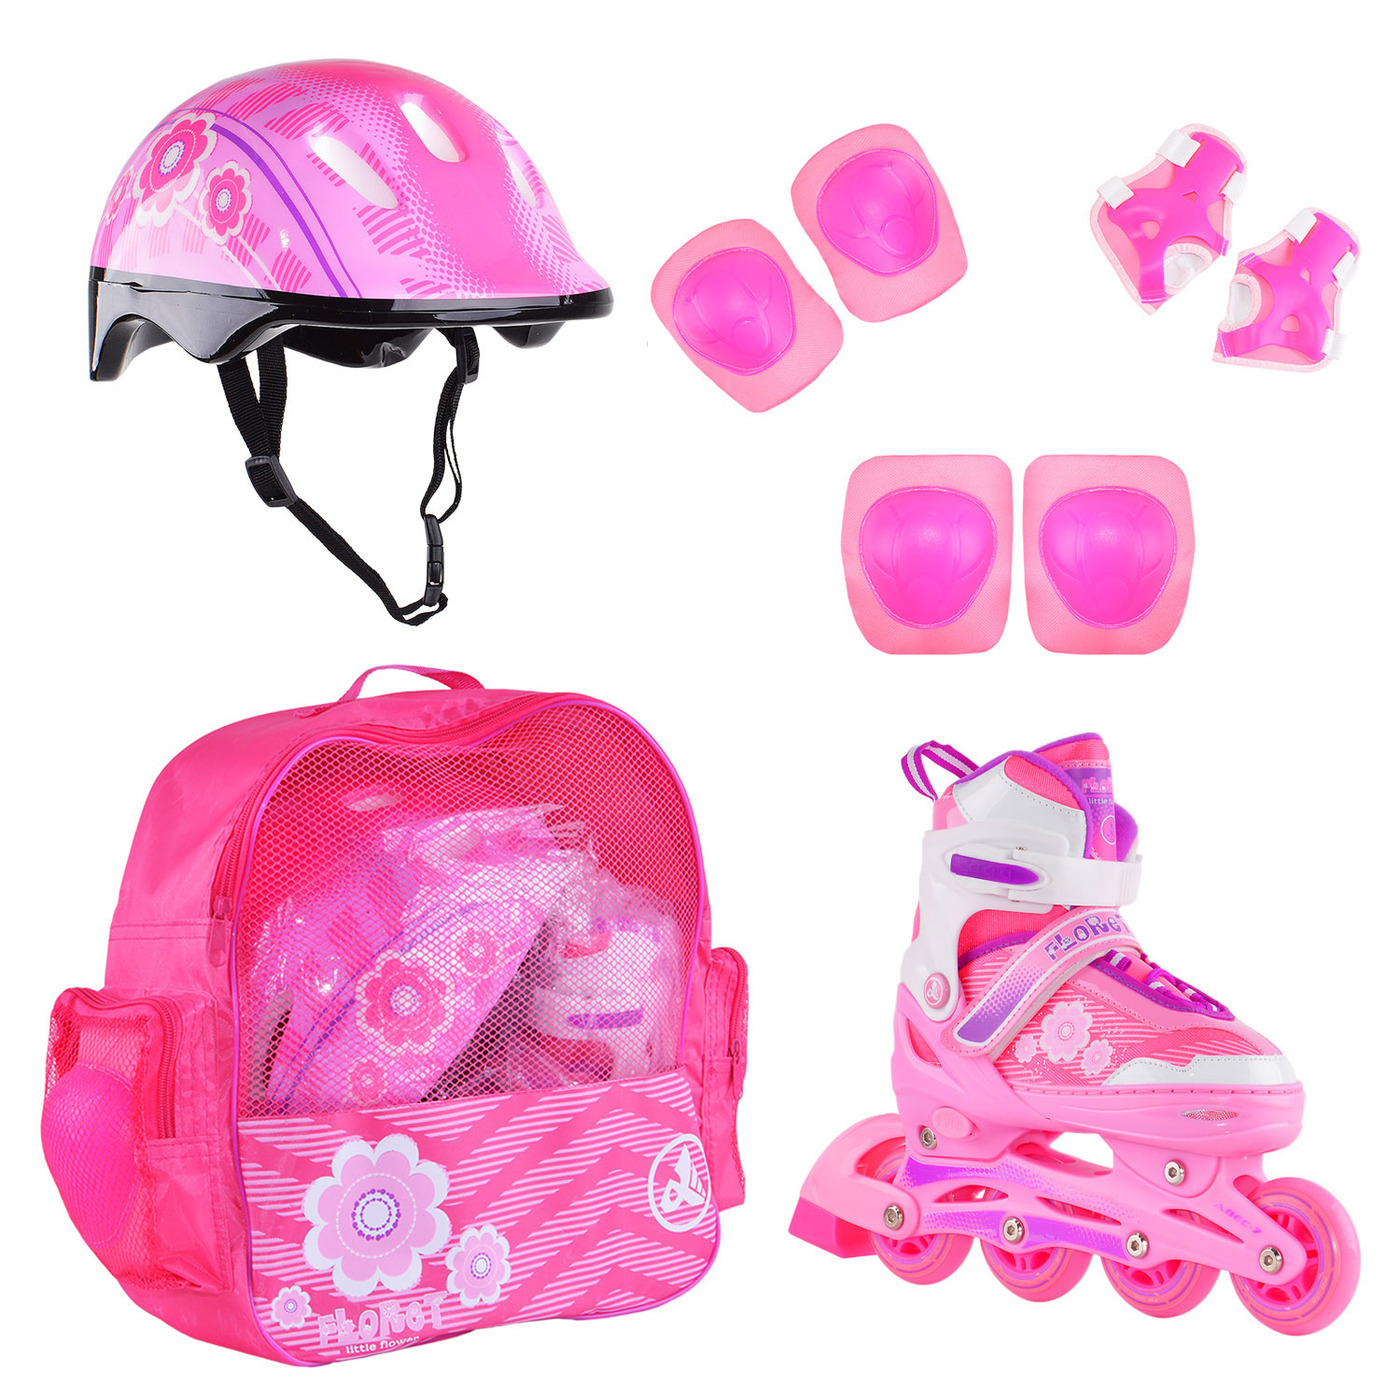 Раздвижные роликовые коньки Alpha Caprice FLORET Wh/Pink/Viol шлем, защита, сумка M:35-38 раздвижные роликовые коньки alpha caprice bell pink